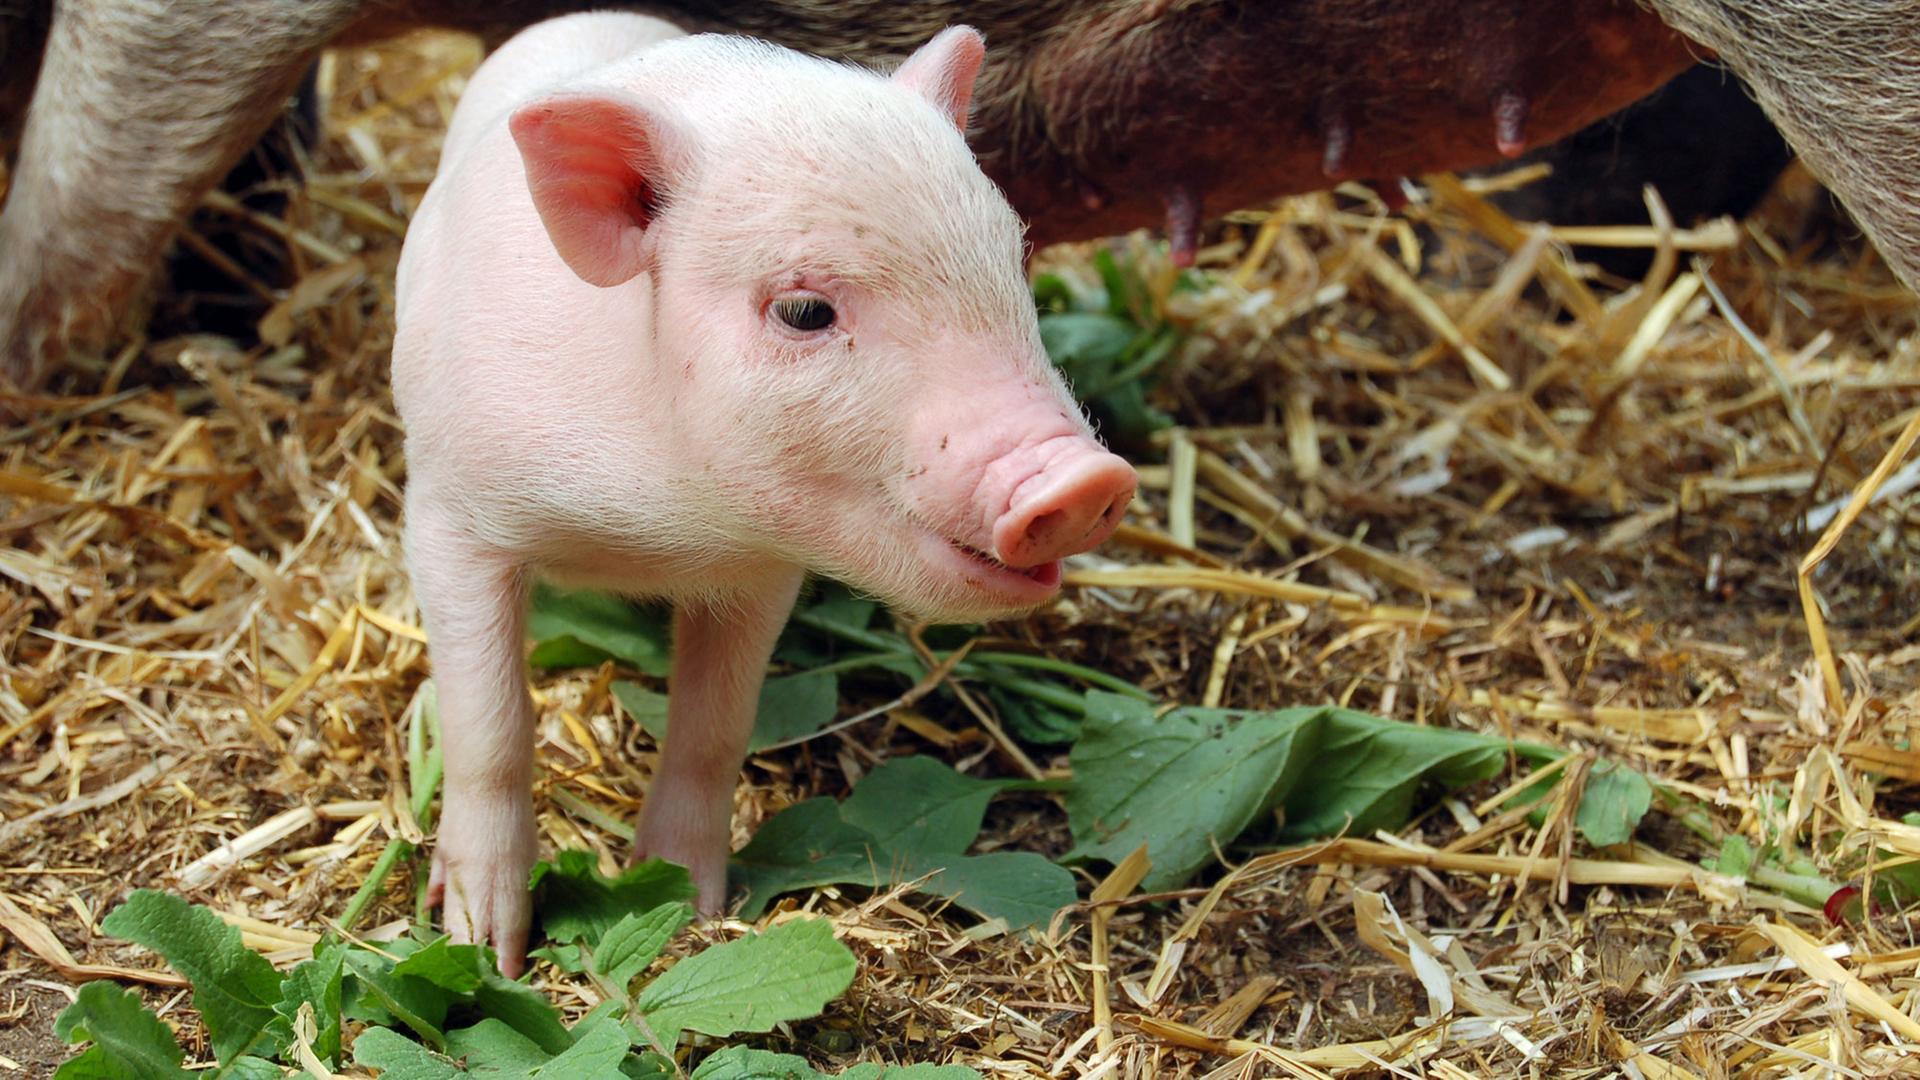 Das Bild zeigt ein Minischwein-Ferkel, aufgenommen am 18.05.2015 in Berlin. Schweine gelten als schlaue Tiere. Man kann sie dressieren und ihnen Tricks beibringen.